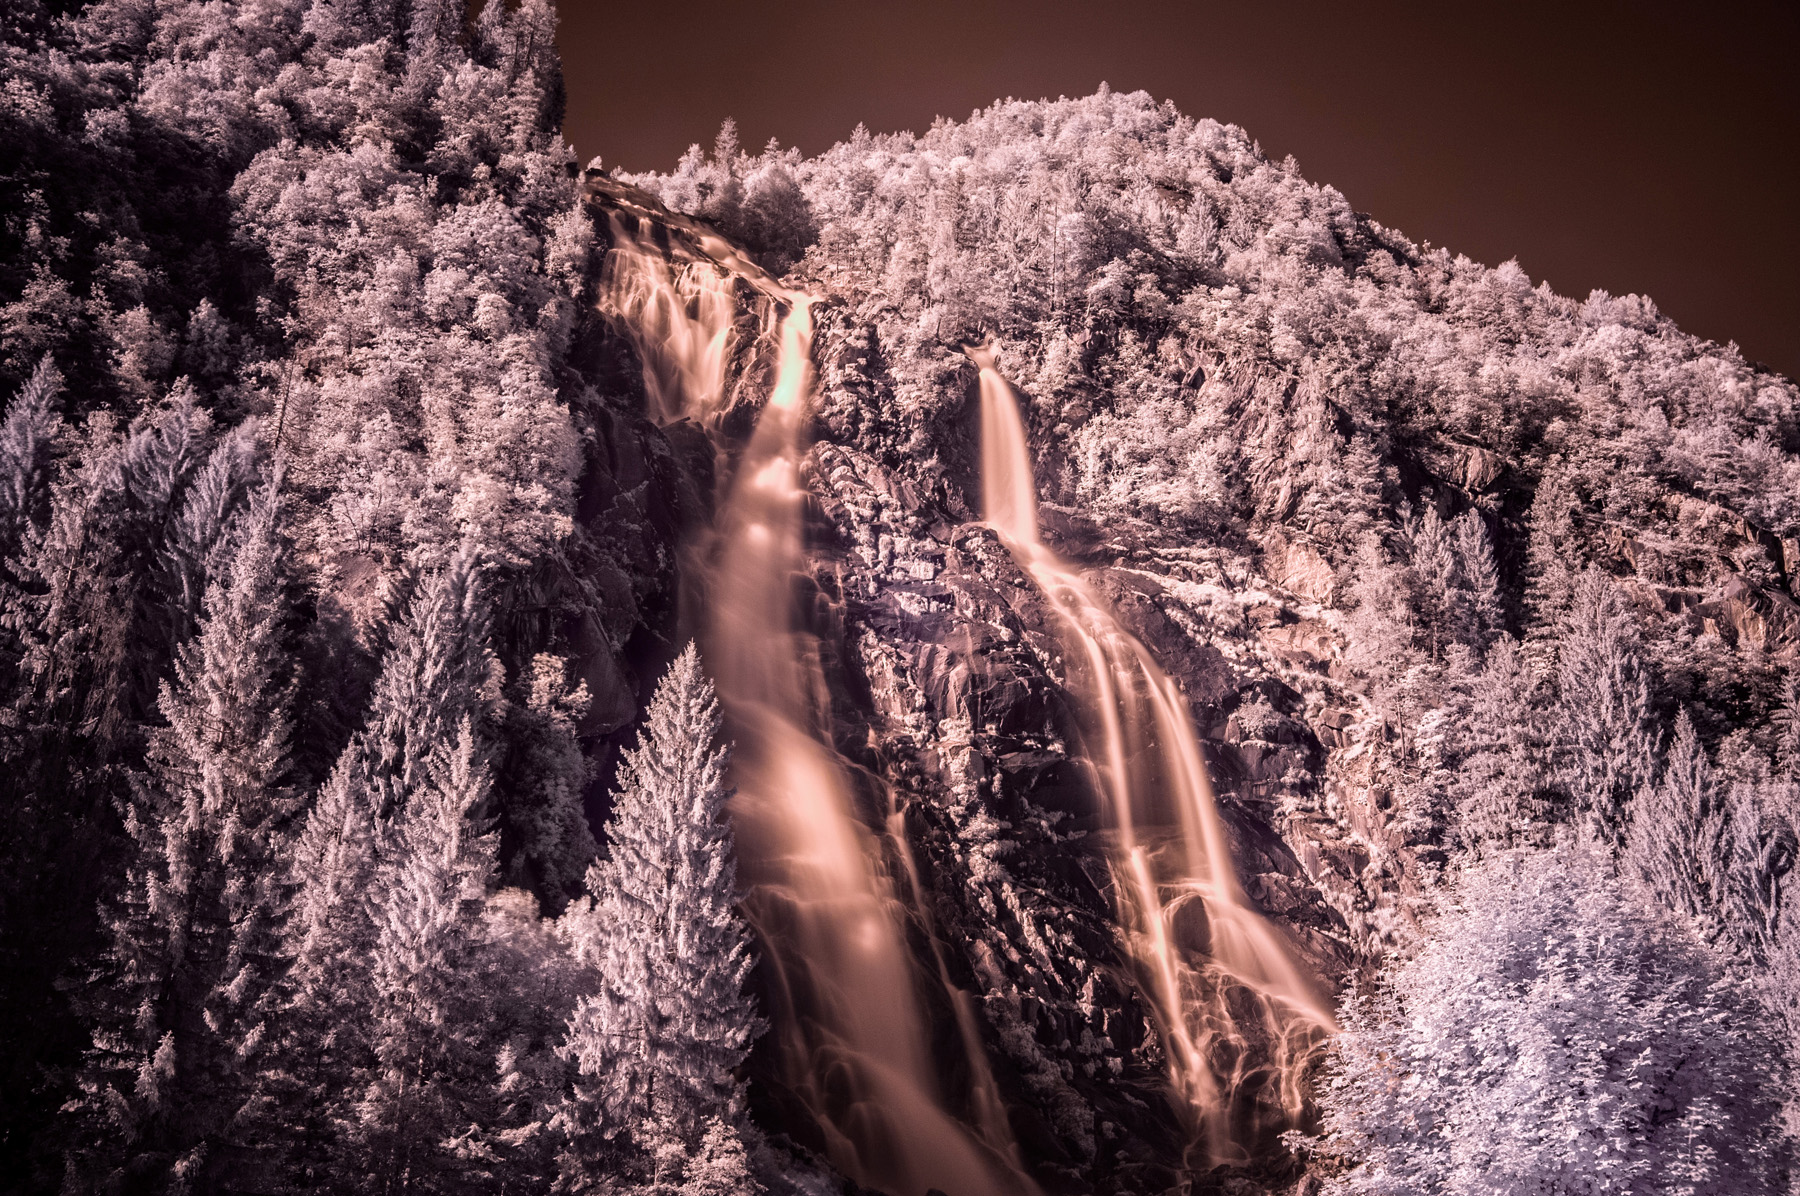 Nardis waterfalls infrared - Fuji x100 + Hoya R70...